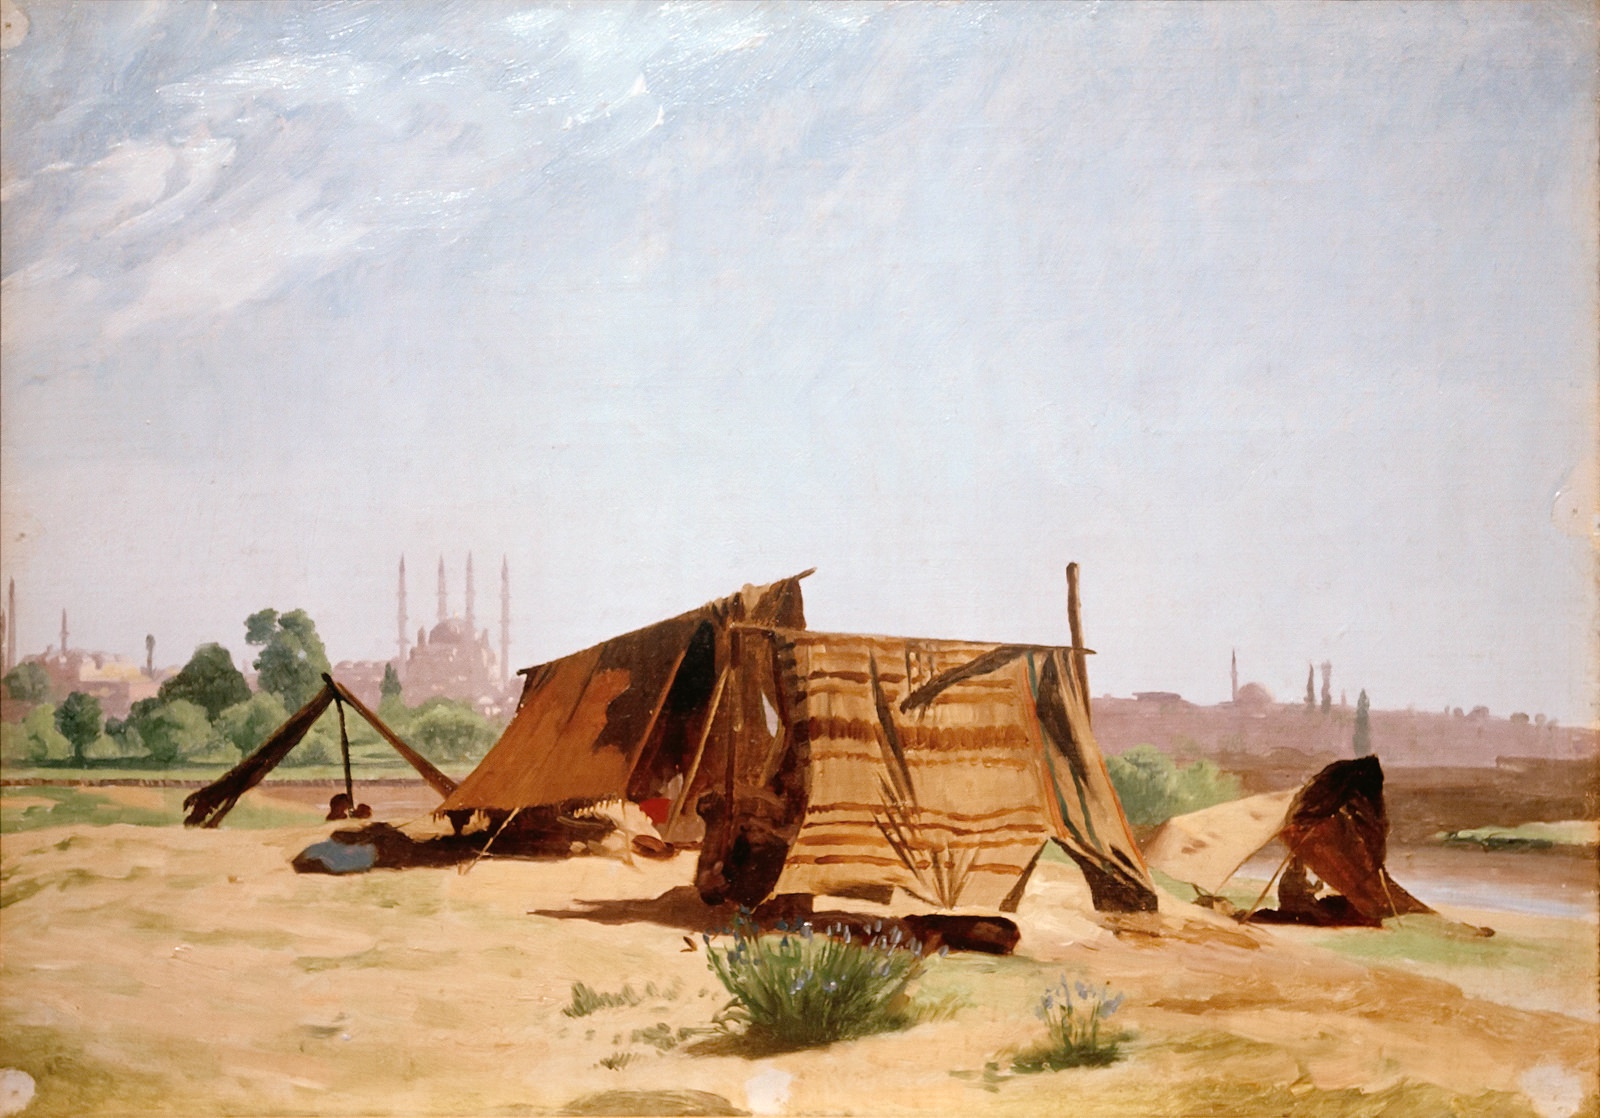 Жан-Леон Жером. "Палаточный городок близ Константинополя". Около 1853. Частная коллекция.